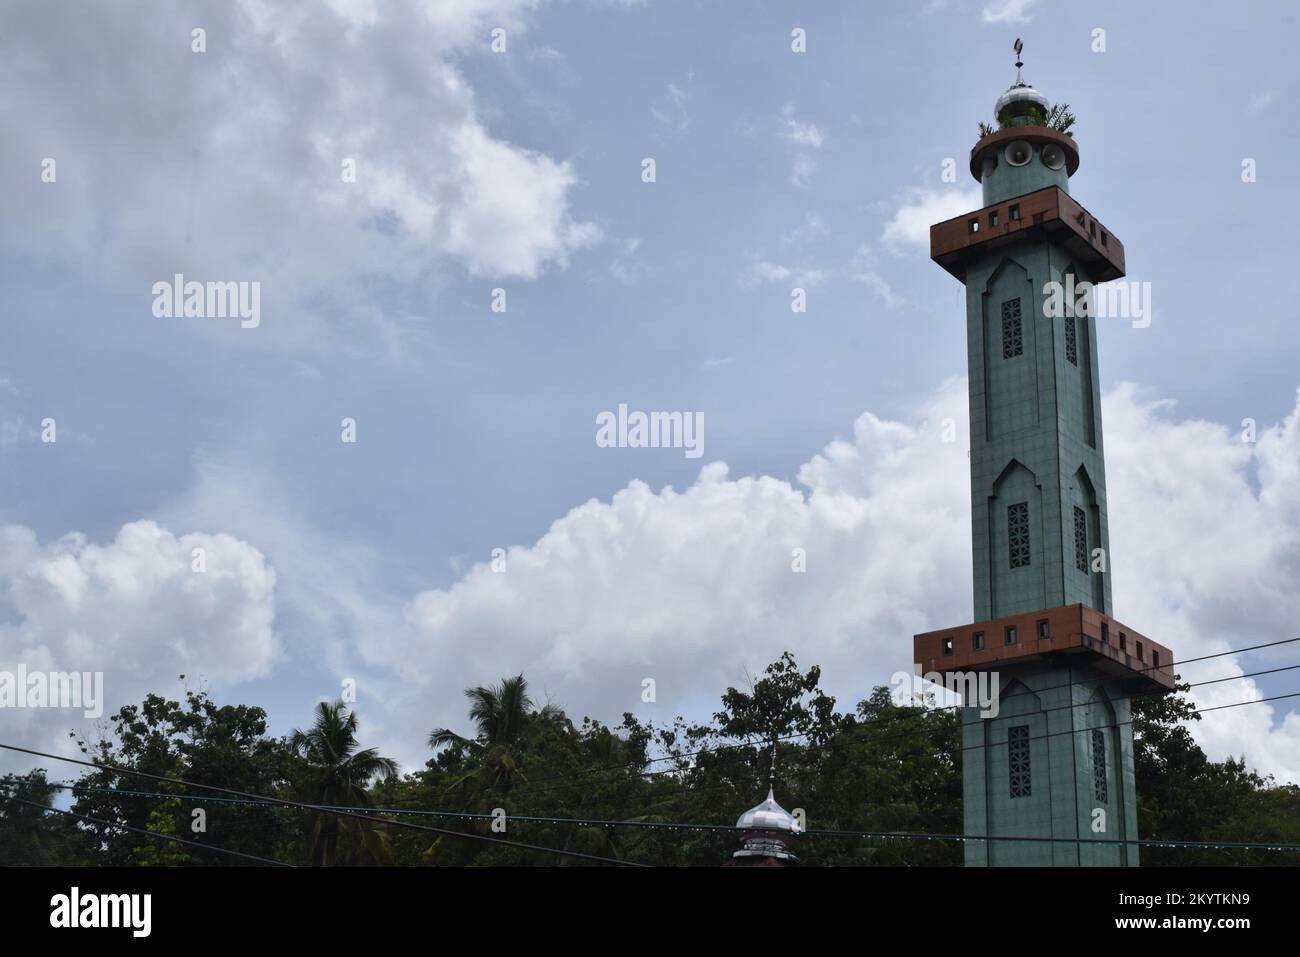 Moschee Towers in Indonesien. Moschee mit islamischem Hintergrund. Das Design der Moschee ist in der Tradition islamischer religiöser Architektur. Kreativ A Stockfoto